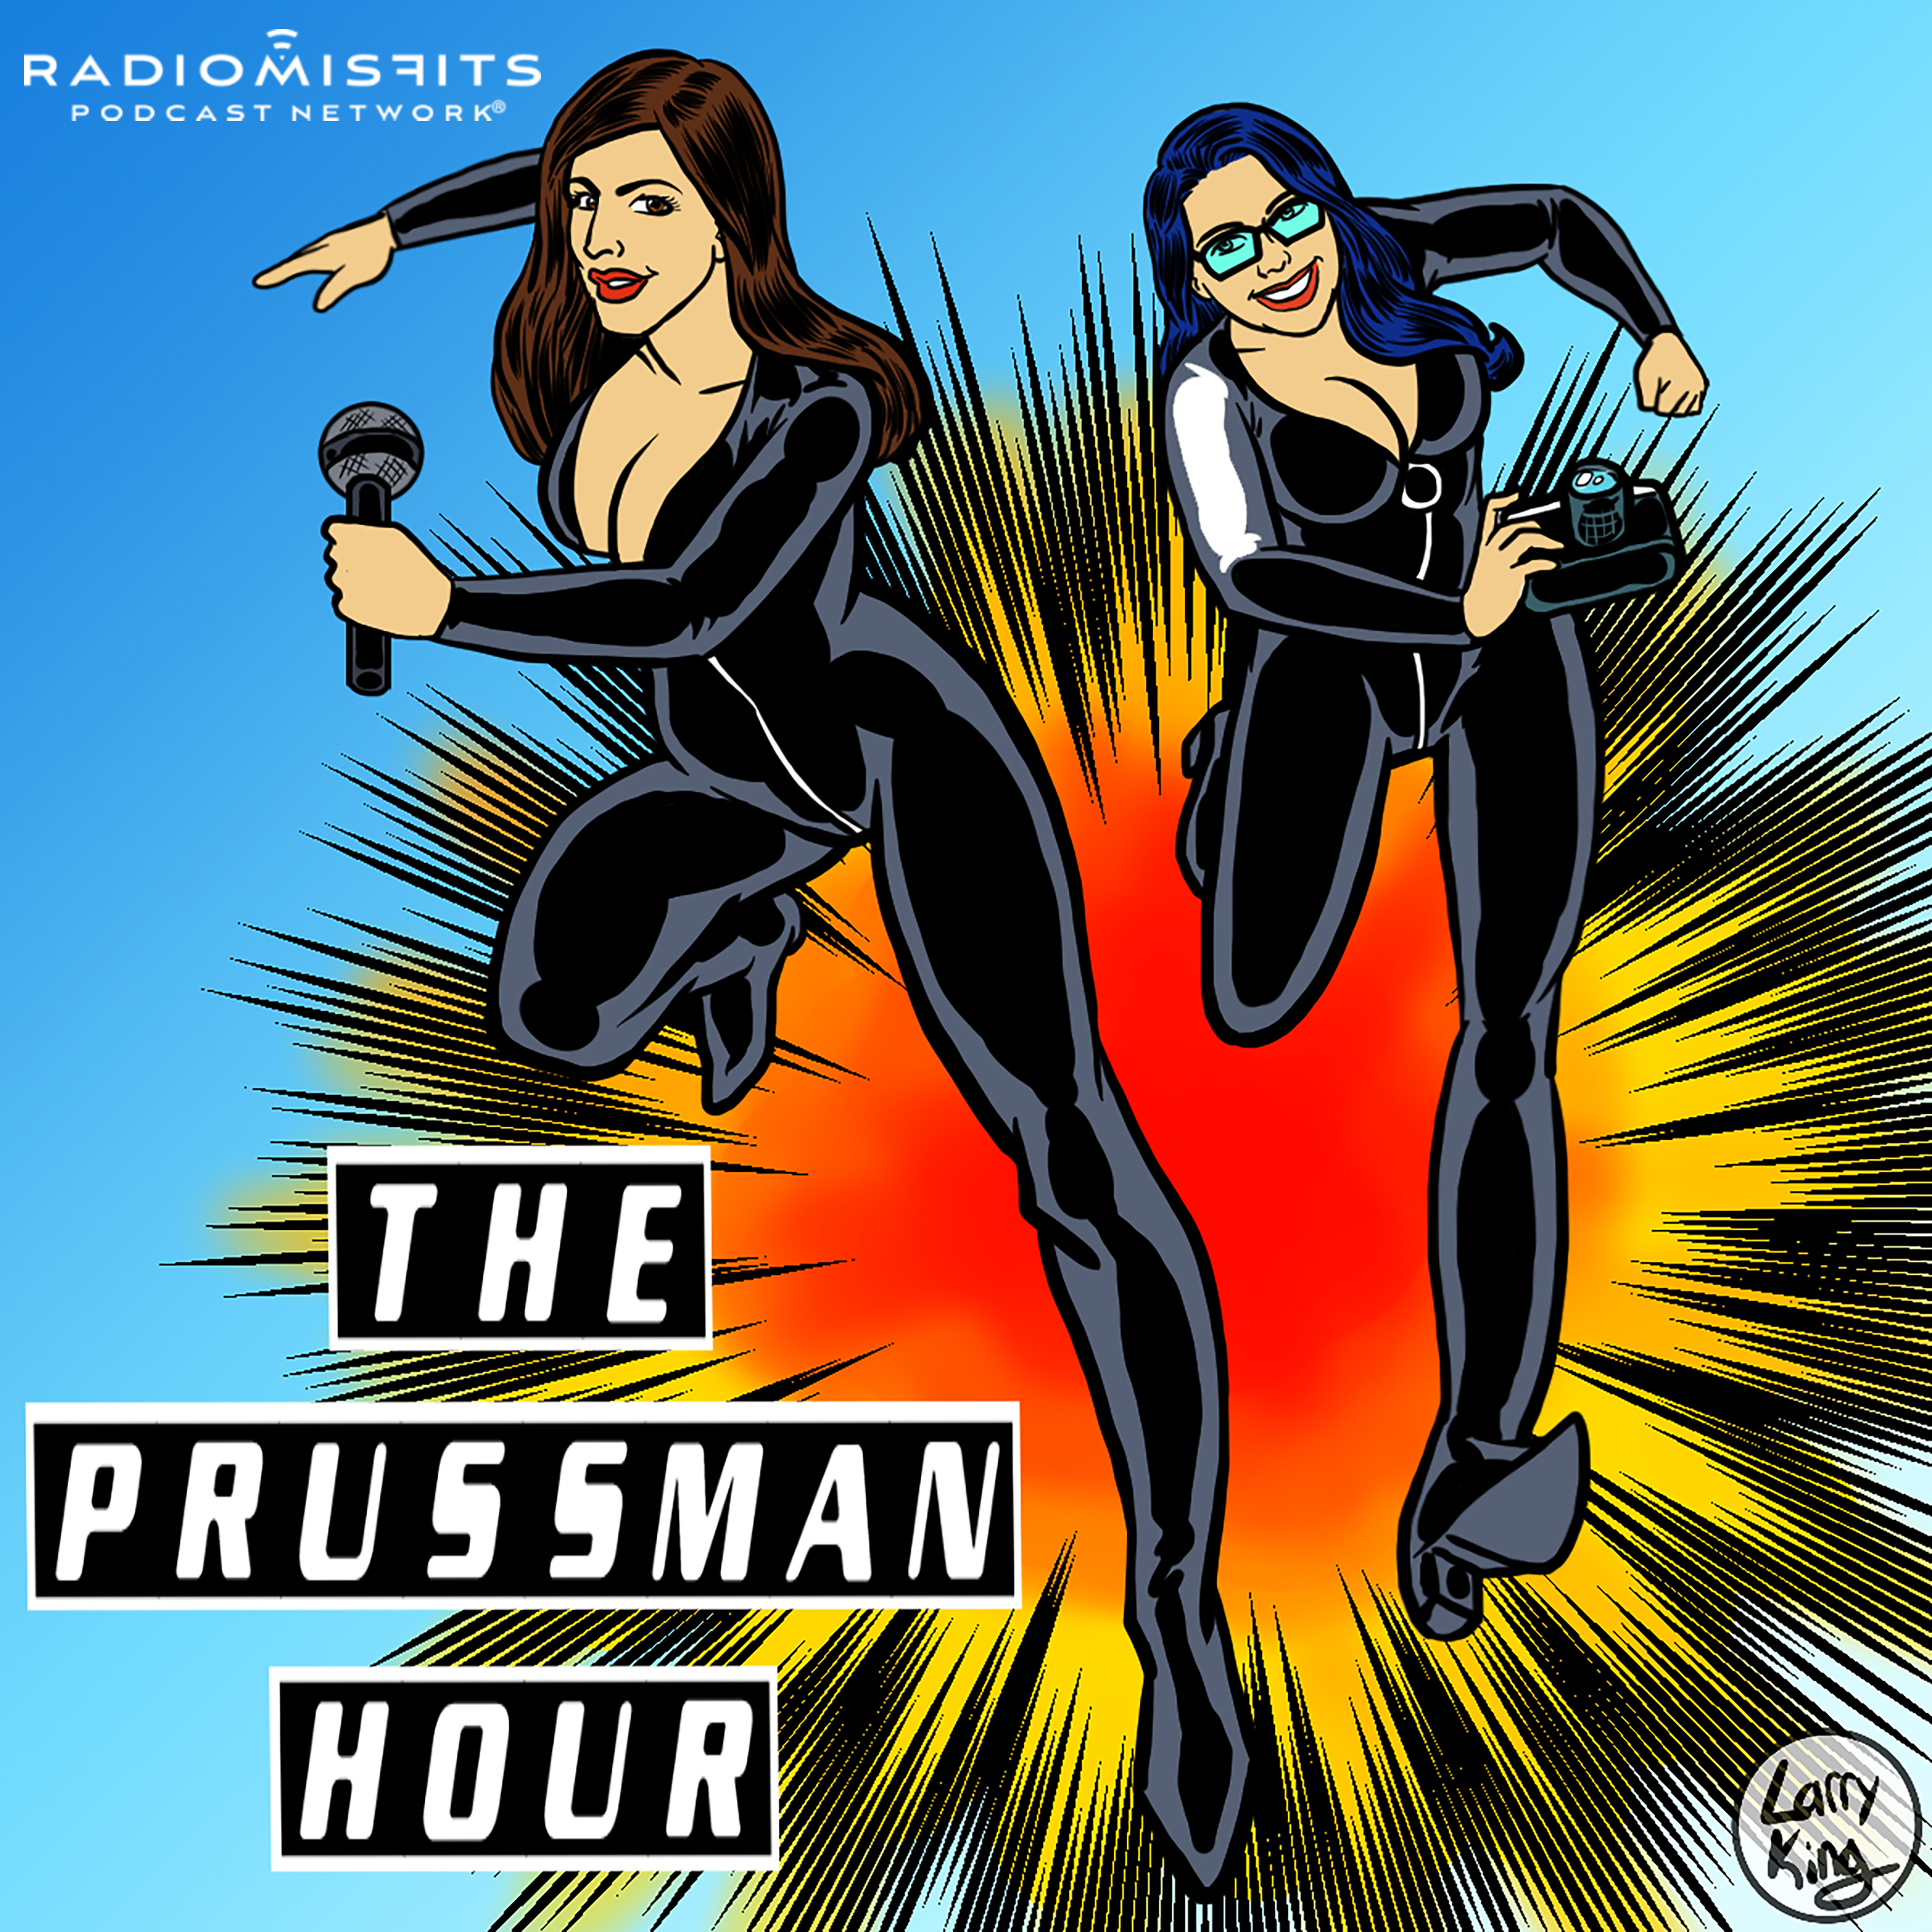 The Prussman Hour on Radio Misfits